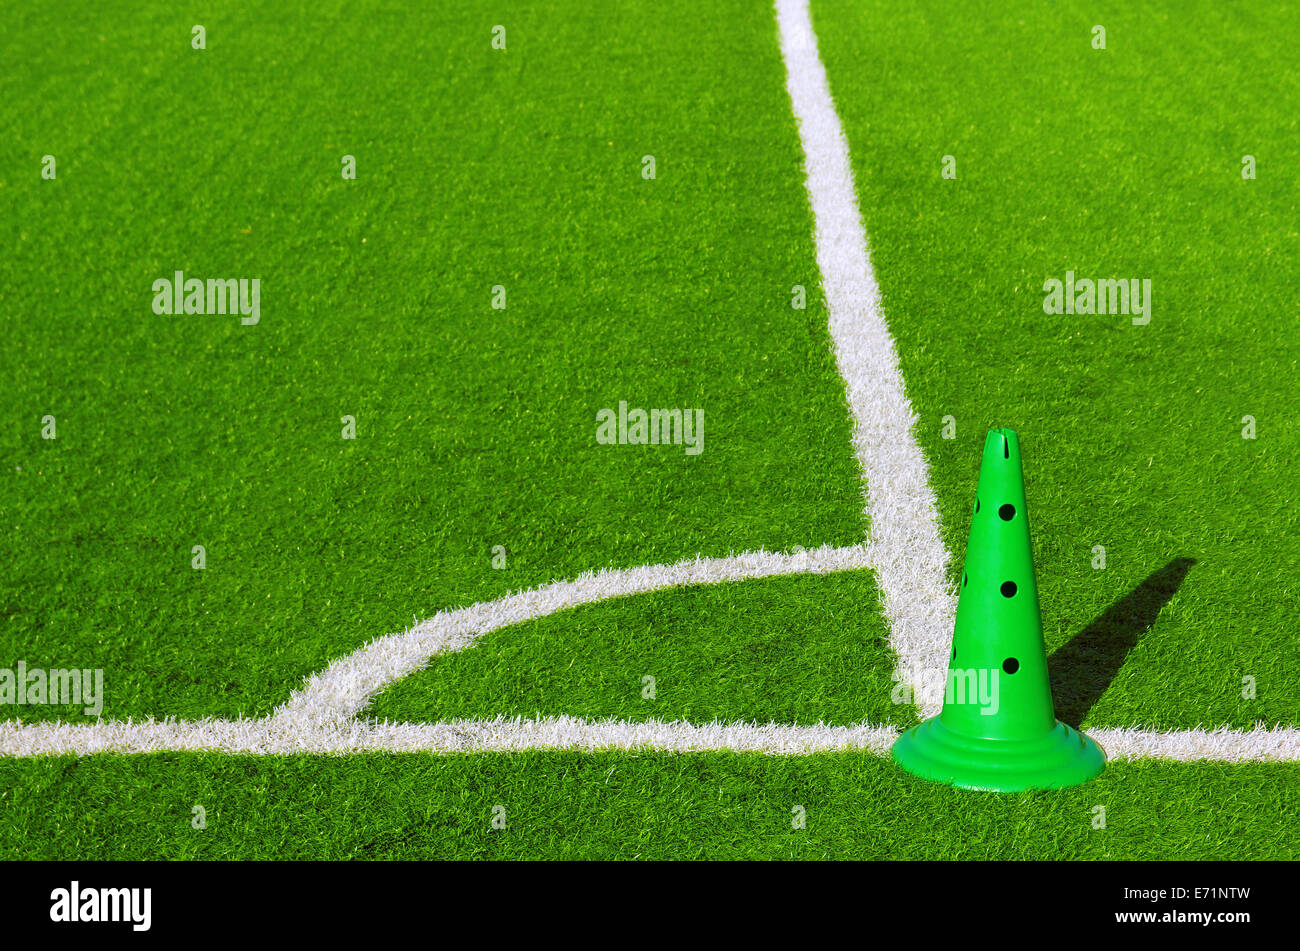 Detalle de la esquina deportes marca en un campo de hierba con cono de plástico verde Foto de stock